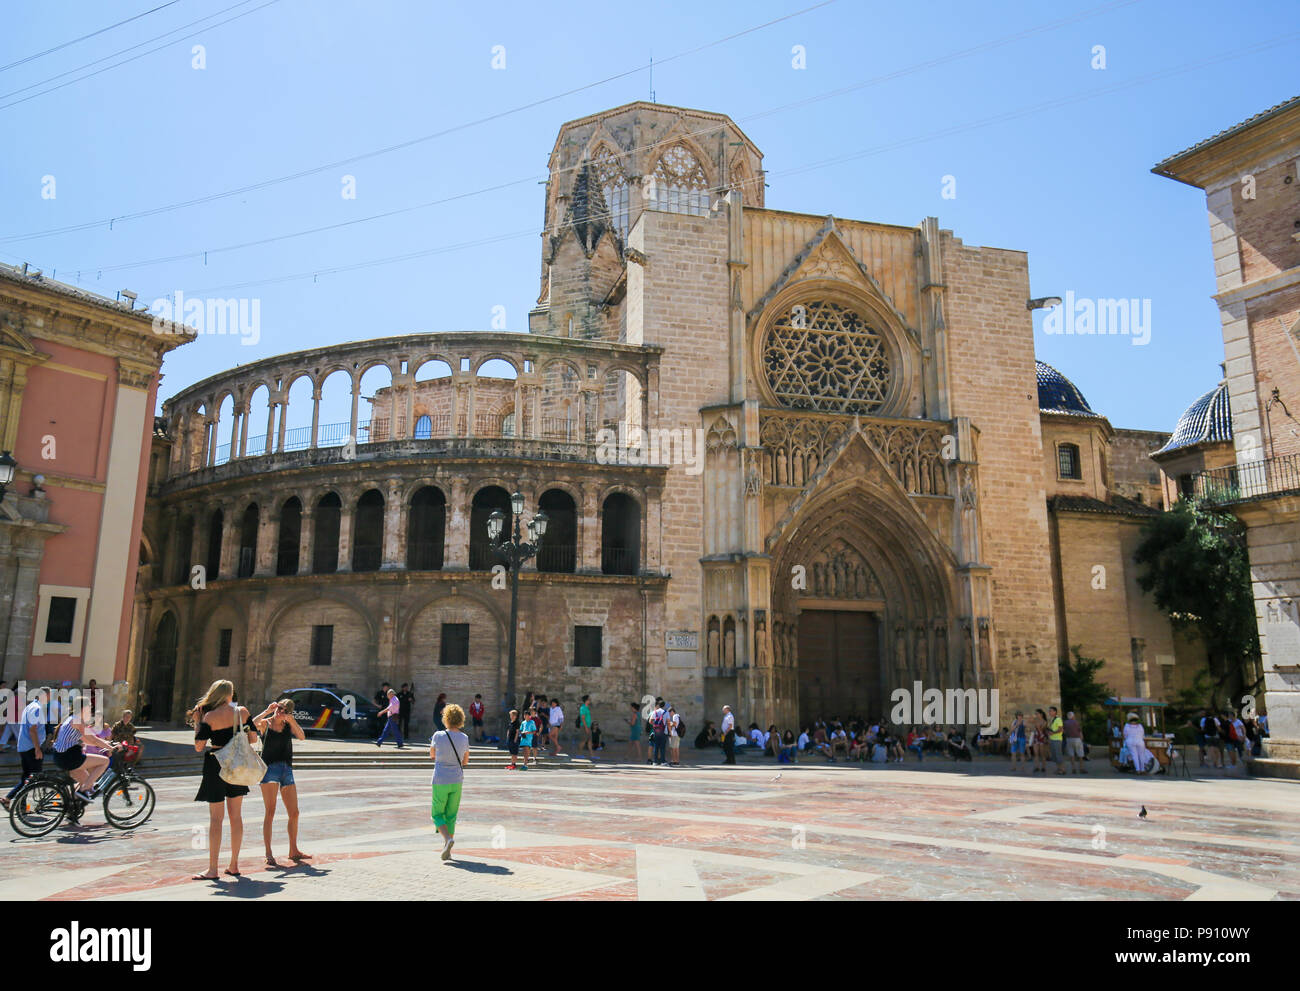 La cathédrale de Valence (13e siècle) à la Plaza de la Almoina dans le centre de Valence, Espagne Banque D'Images